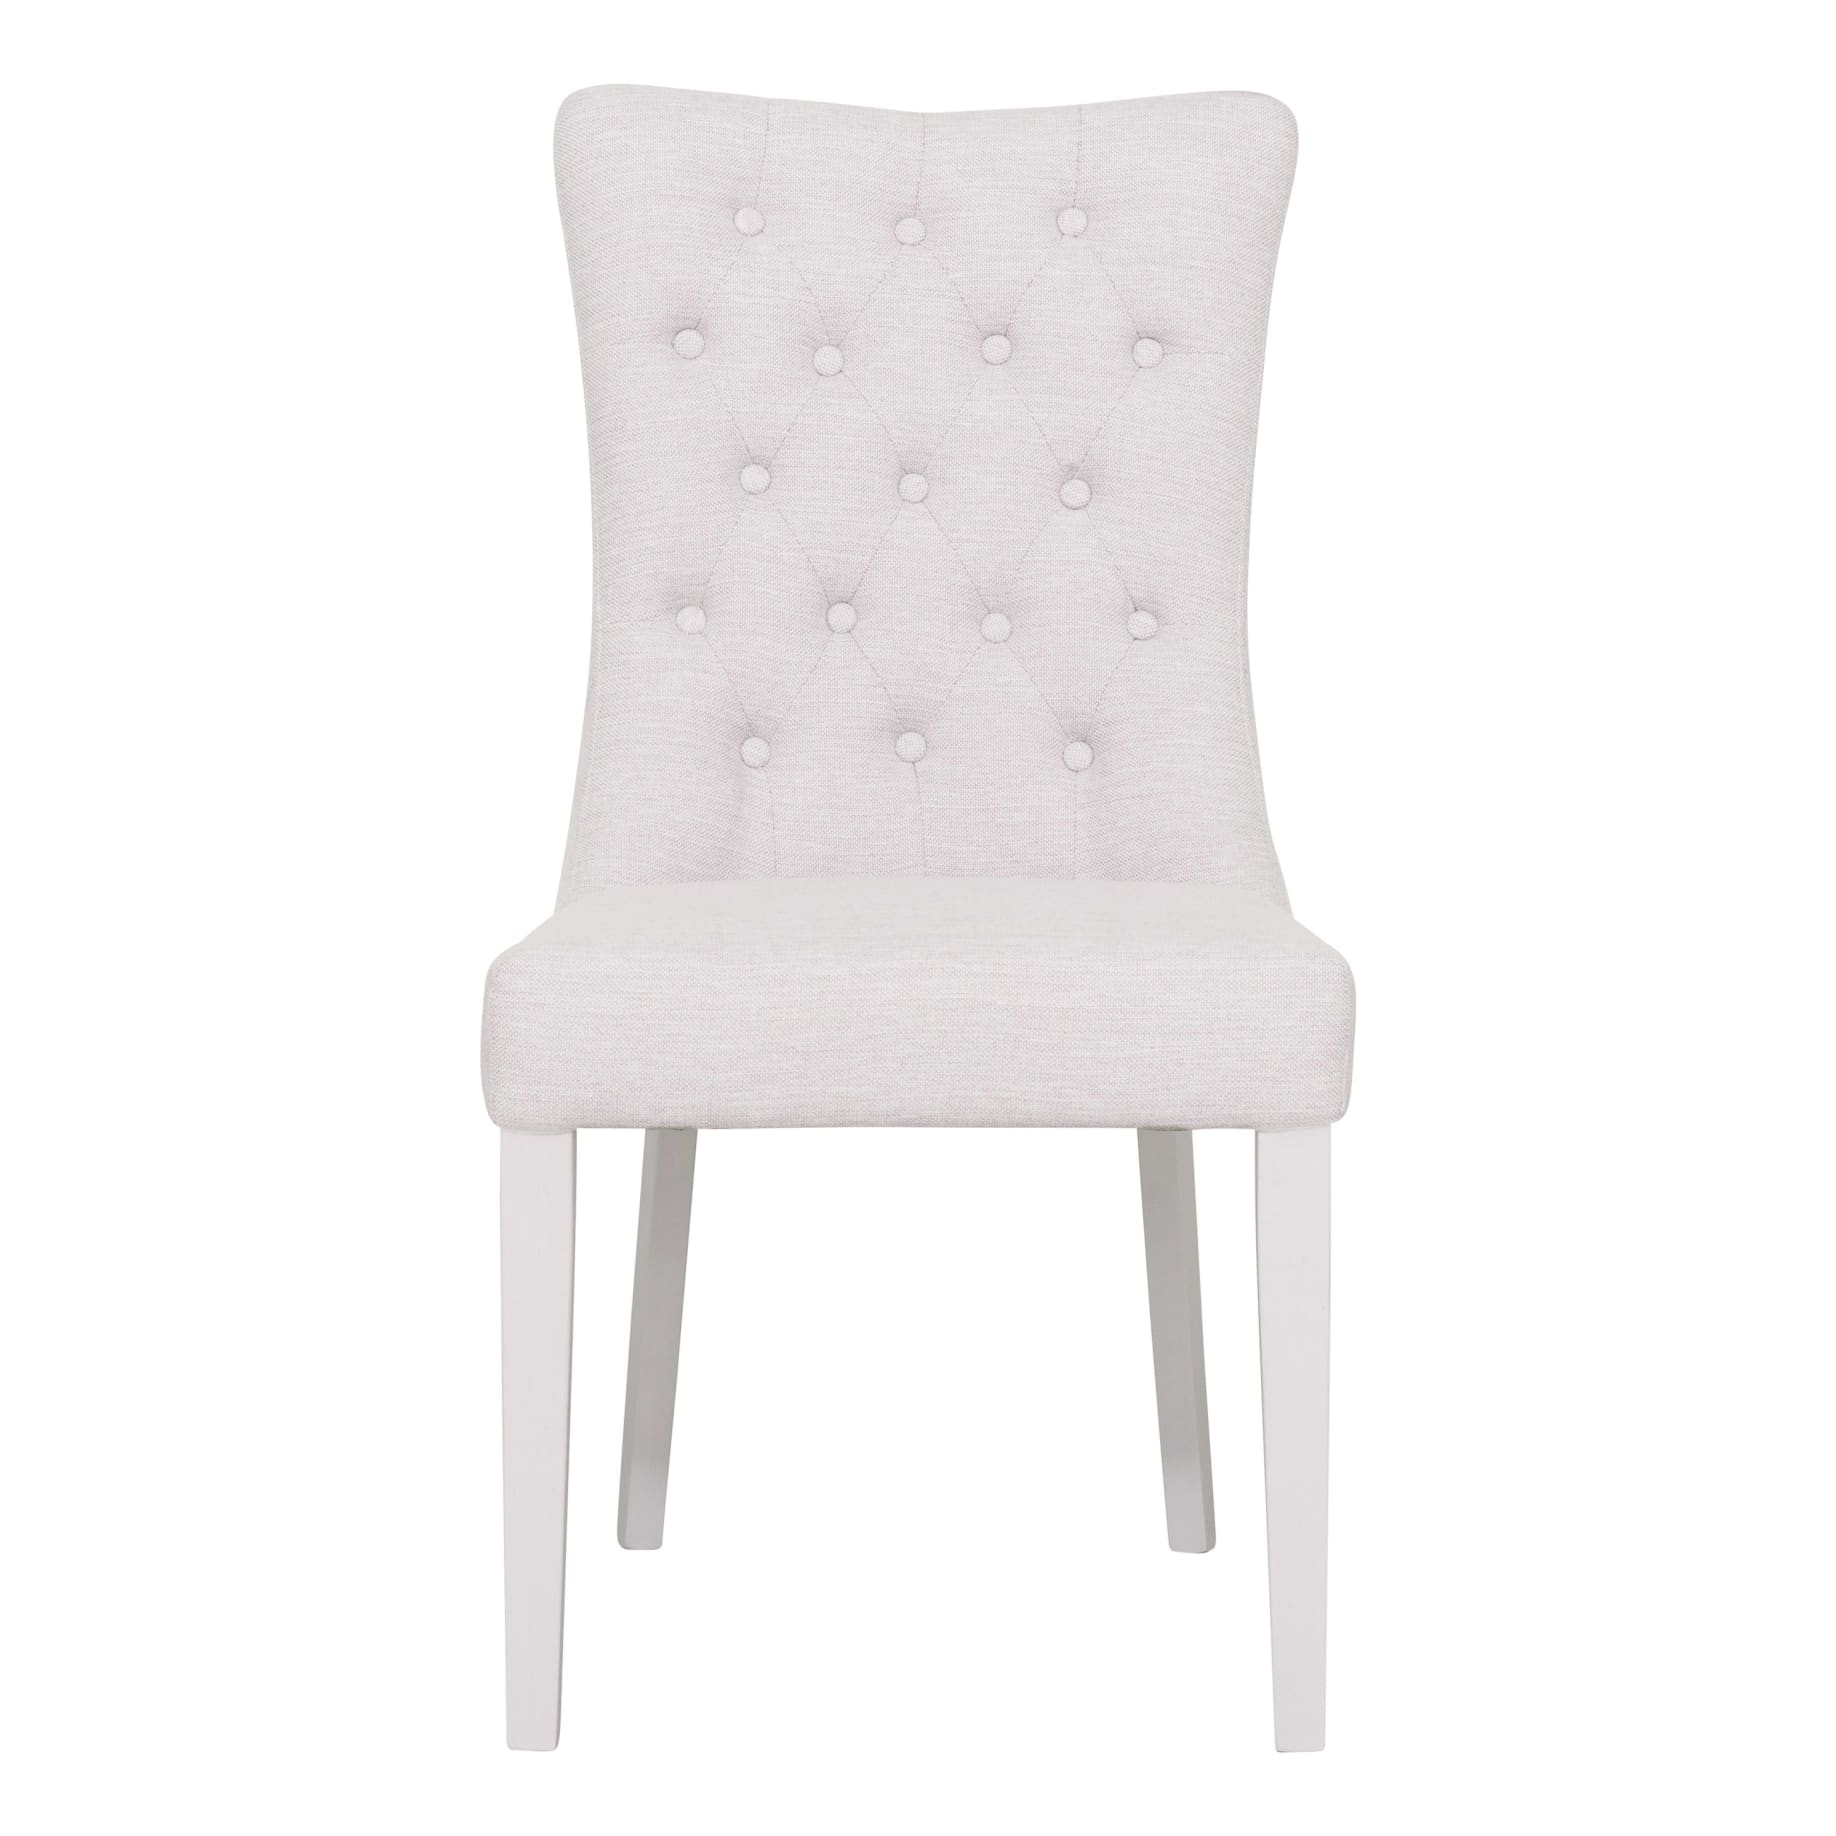 Xavier Dining Chair in Beige / White